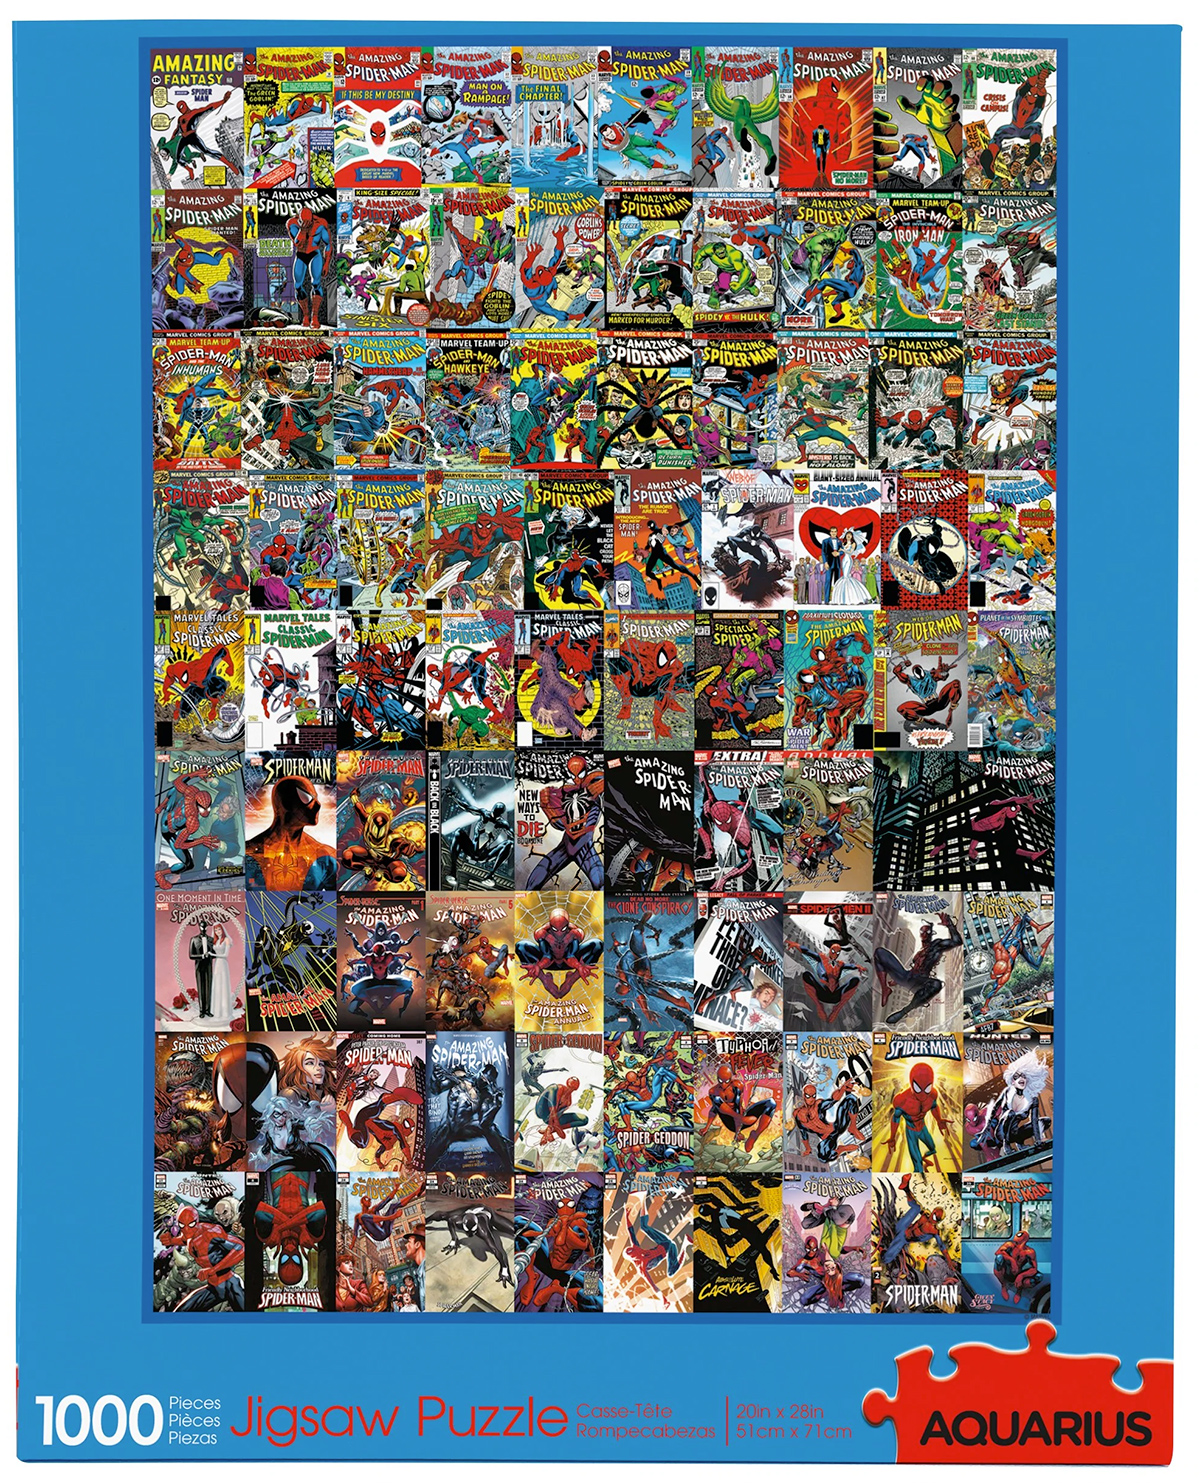 Quebra Cabeca Homem Aranha Marvel Spider-Man Covers 1000 Piece Jigsaw Puzzle